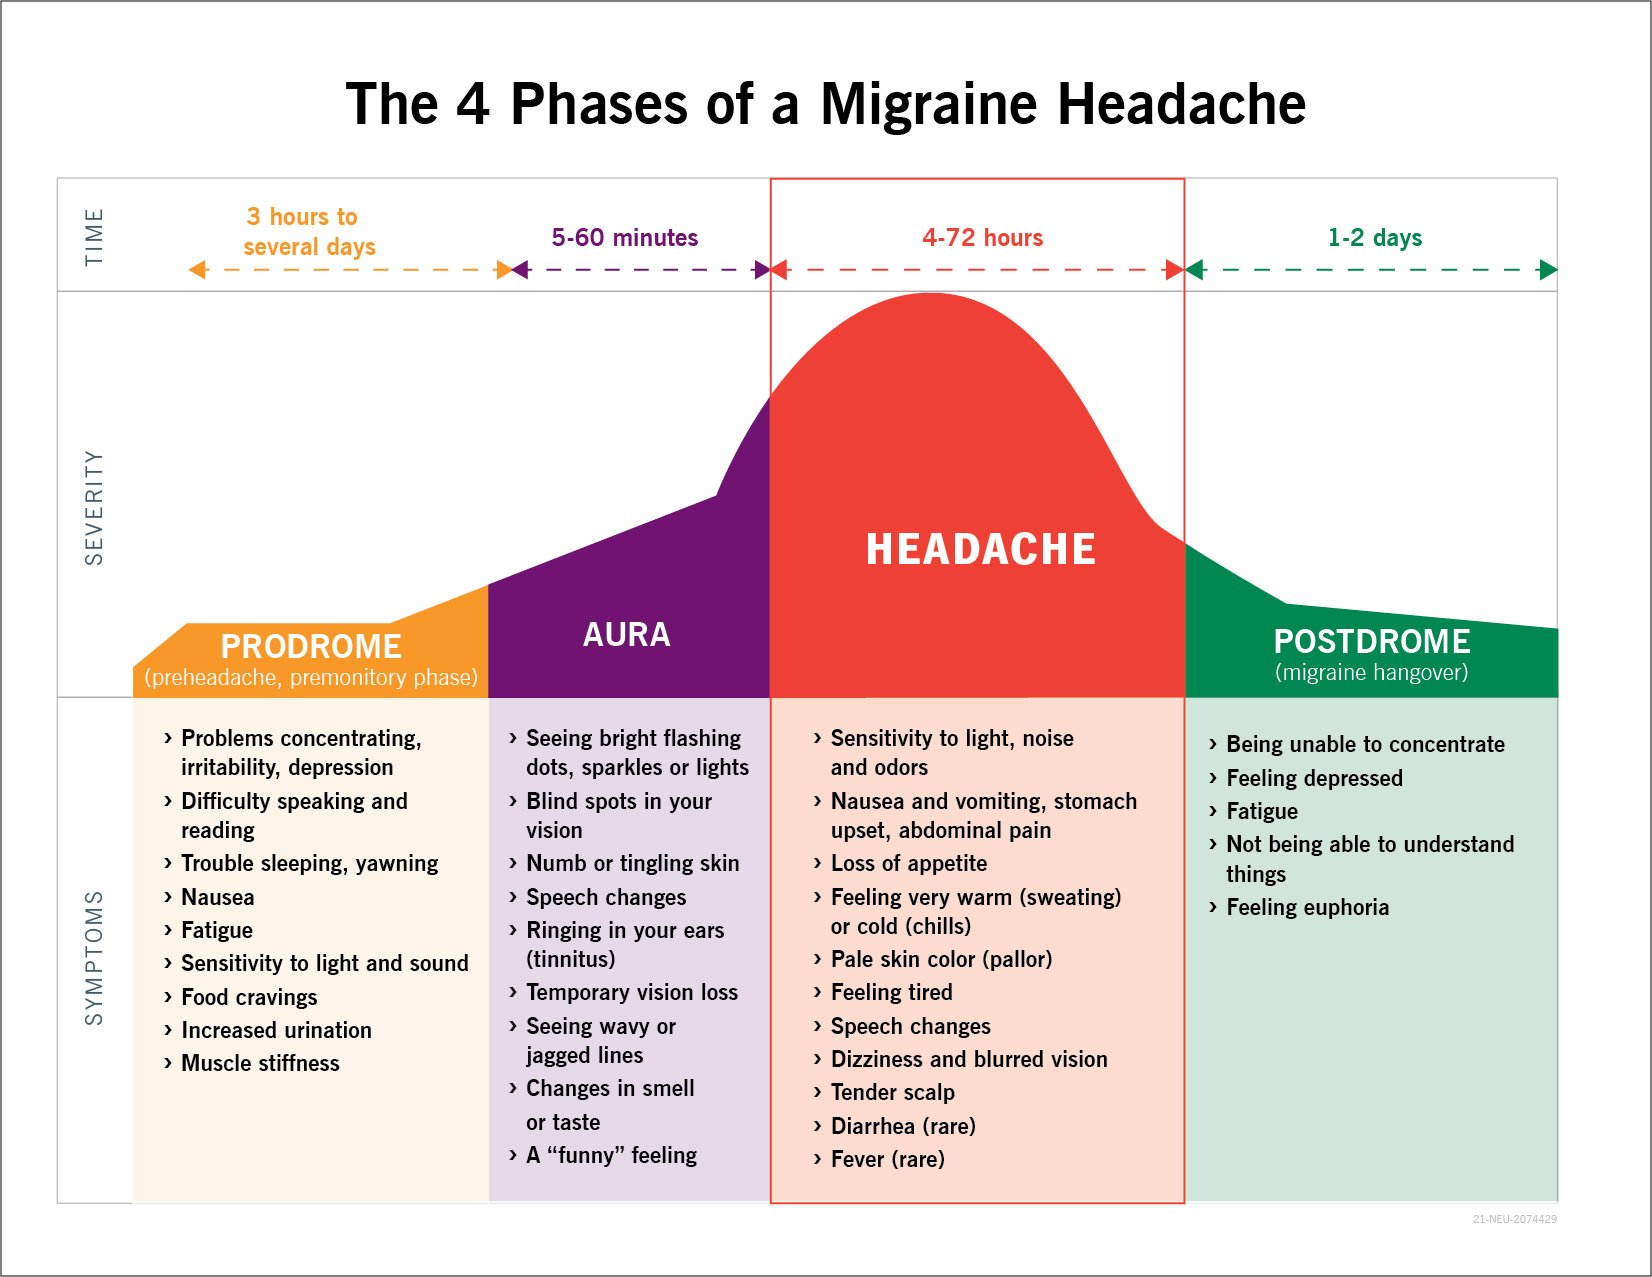 偏头痛的4个阶段示意图:前驱，先兆，头痛，后驱